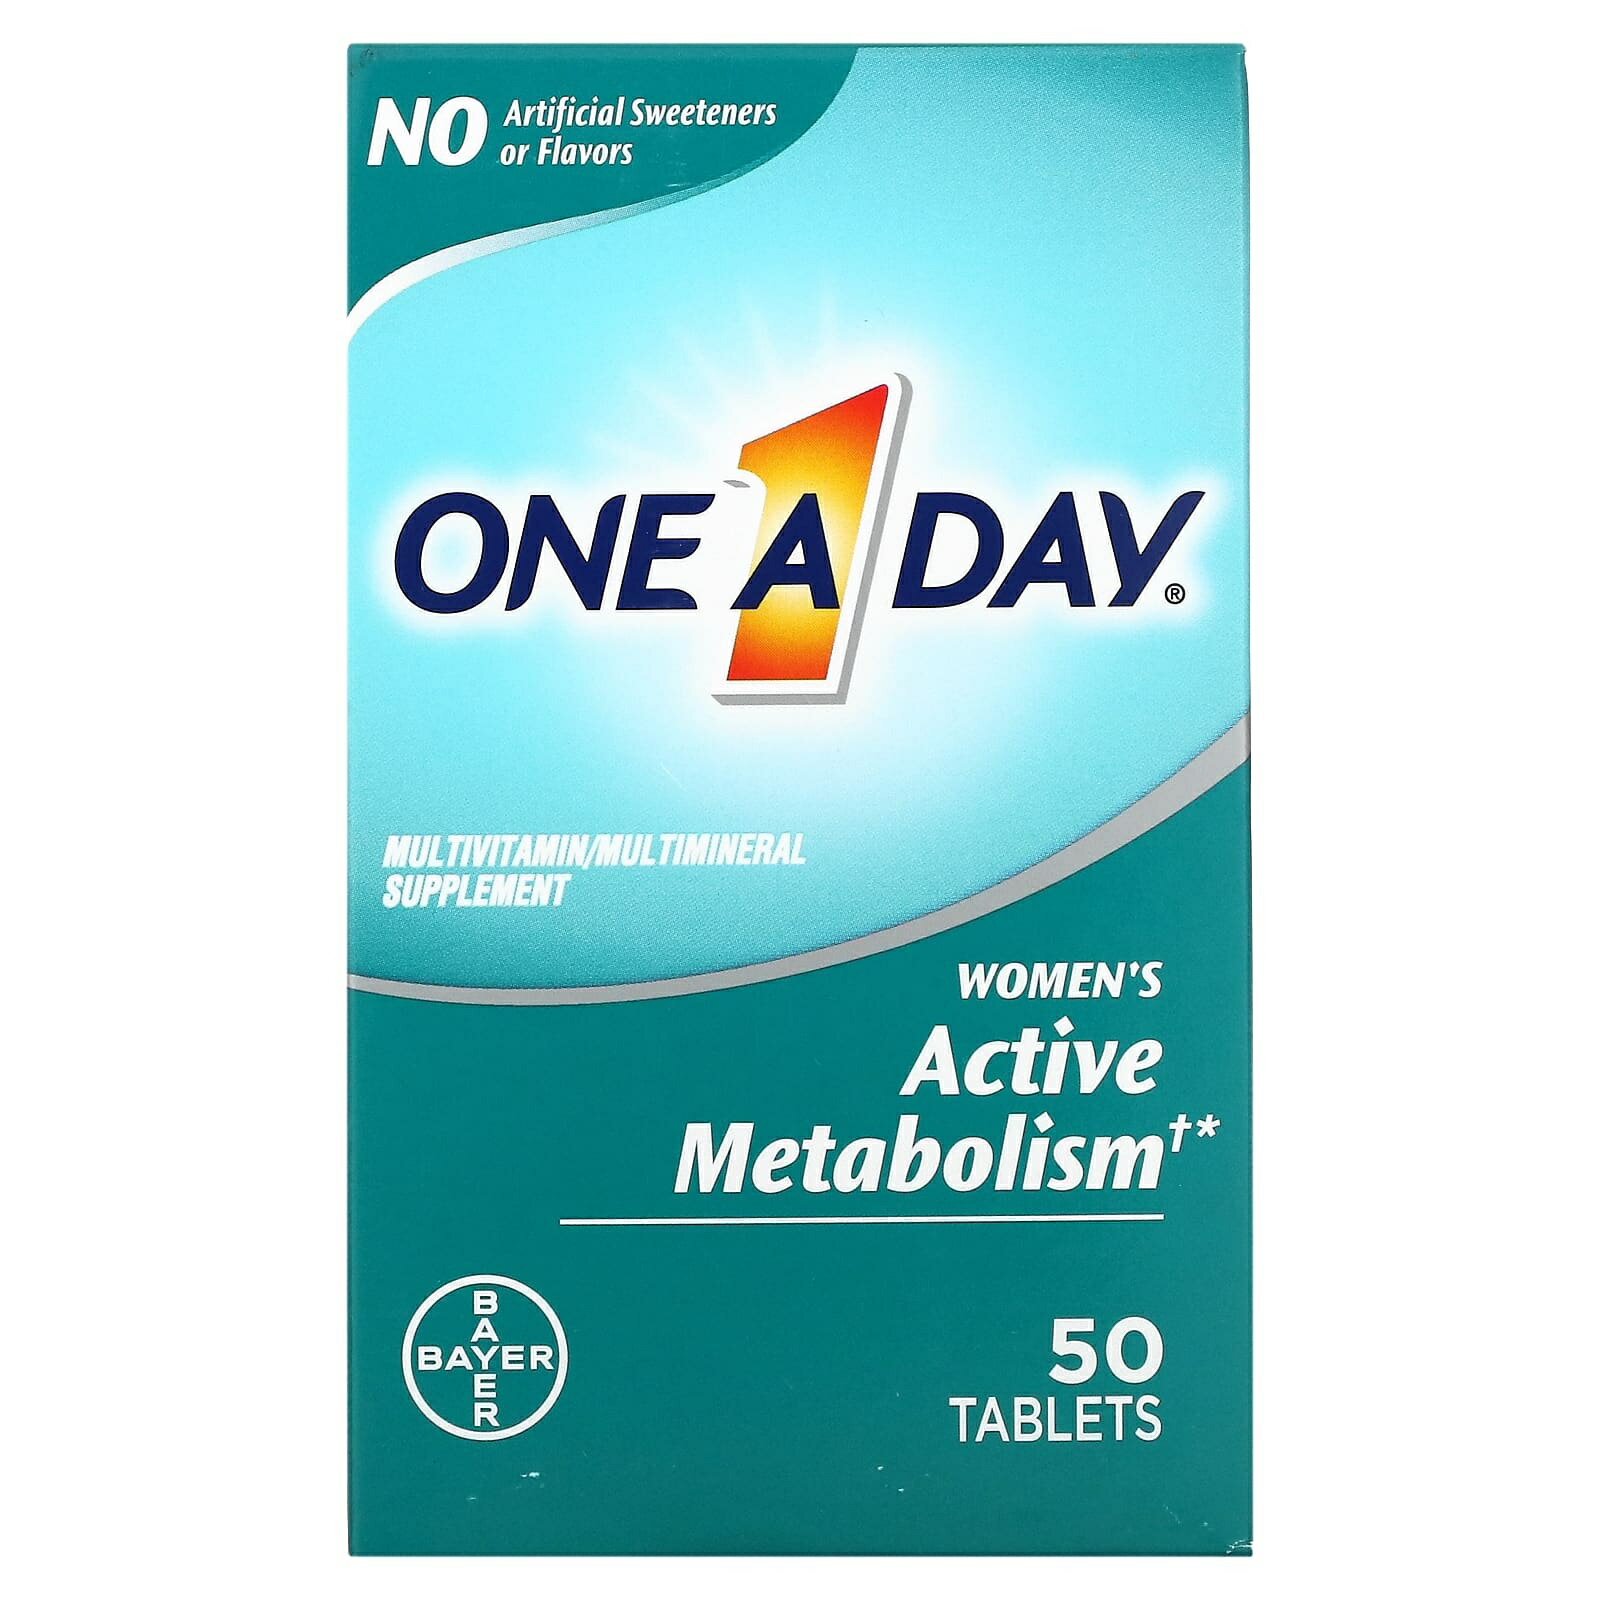 One-A-Day, 女性の活発な代謝 (Women's Active Metabolism) マルチビタミン/マルチミネラルサプリメント、50錠